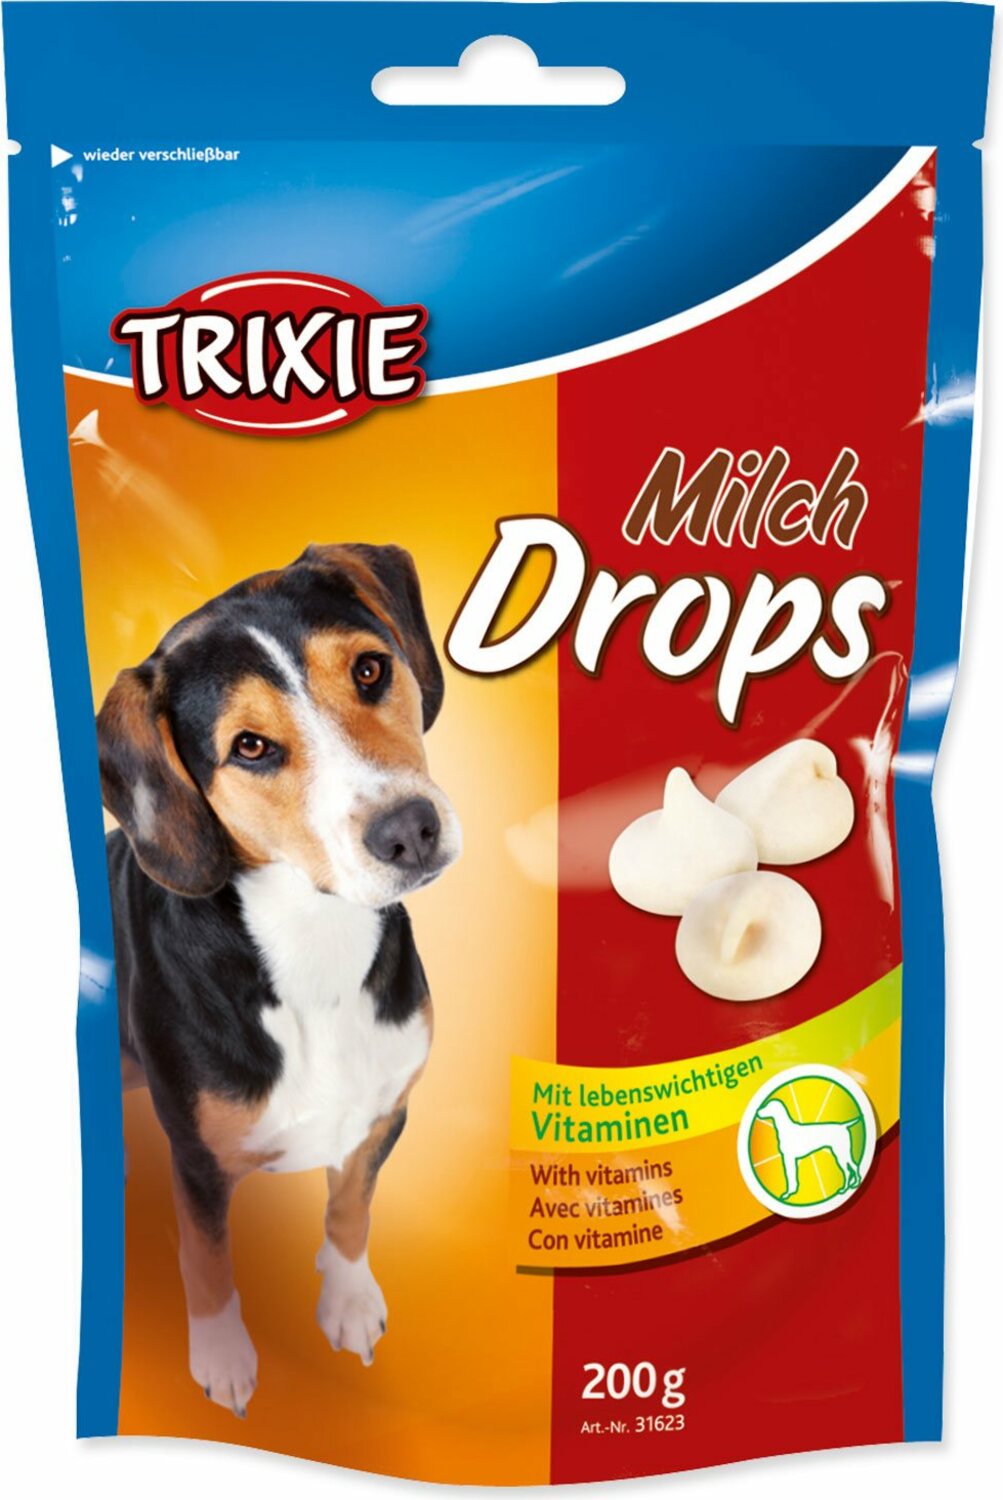 Pochoutka Trixie Dropsy mléčné 200g